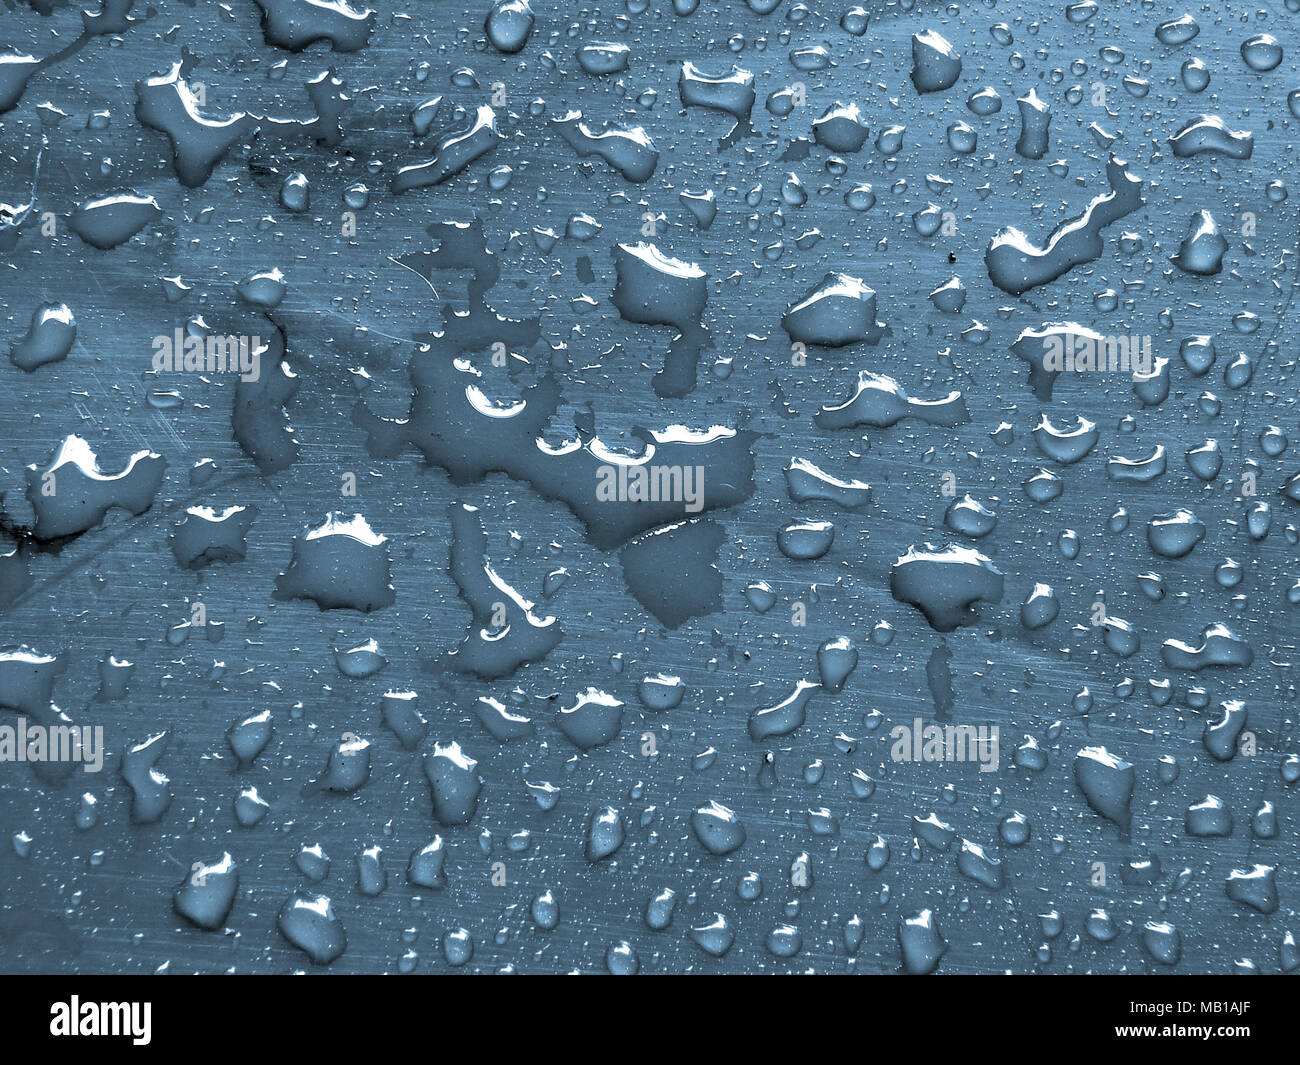 Gocce d'acqua sulla superiorità aerea blu superficie metallica Foto Stock